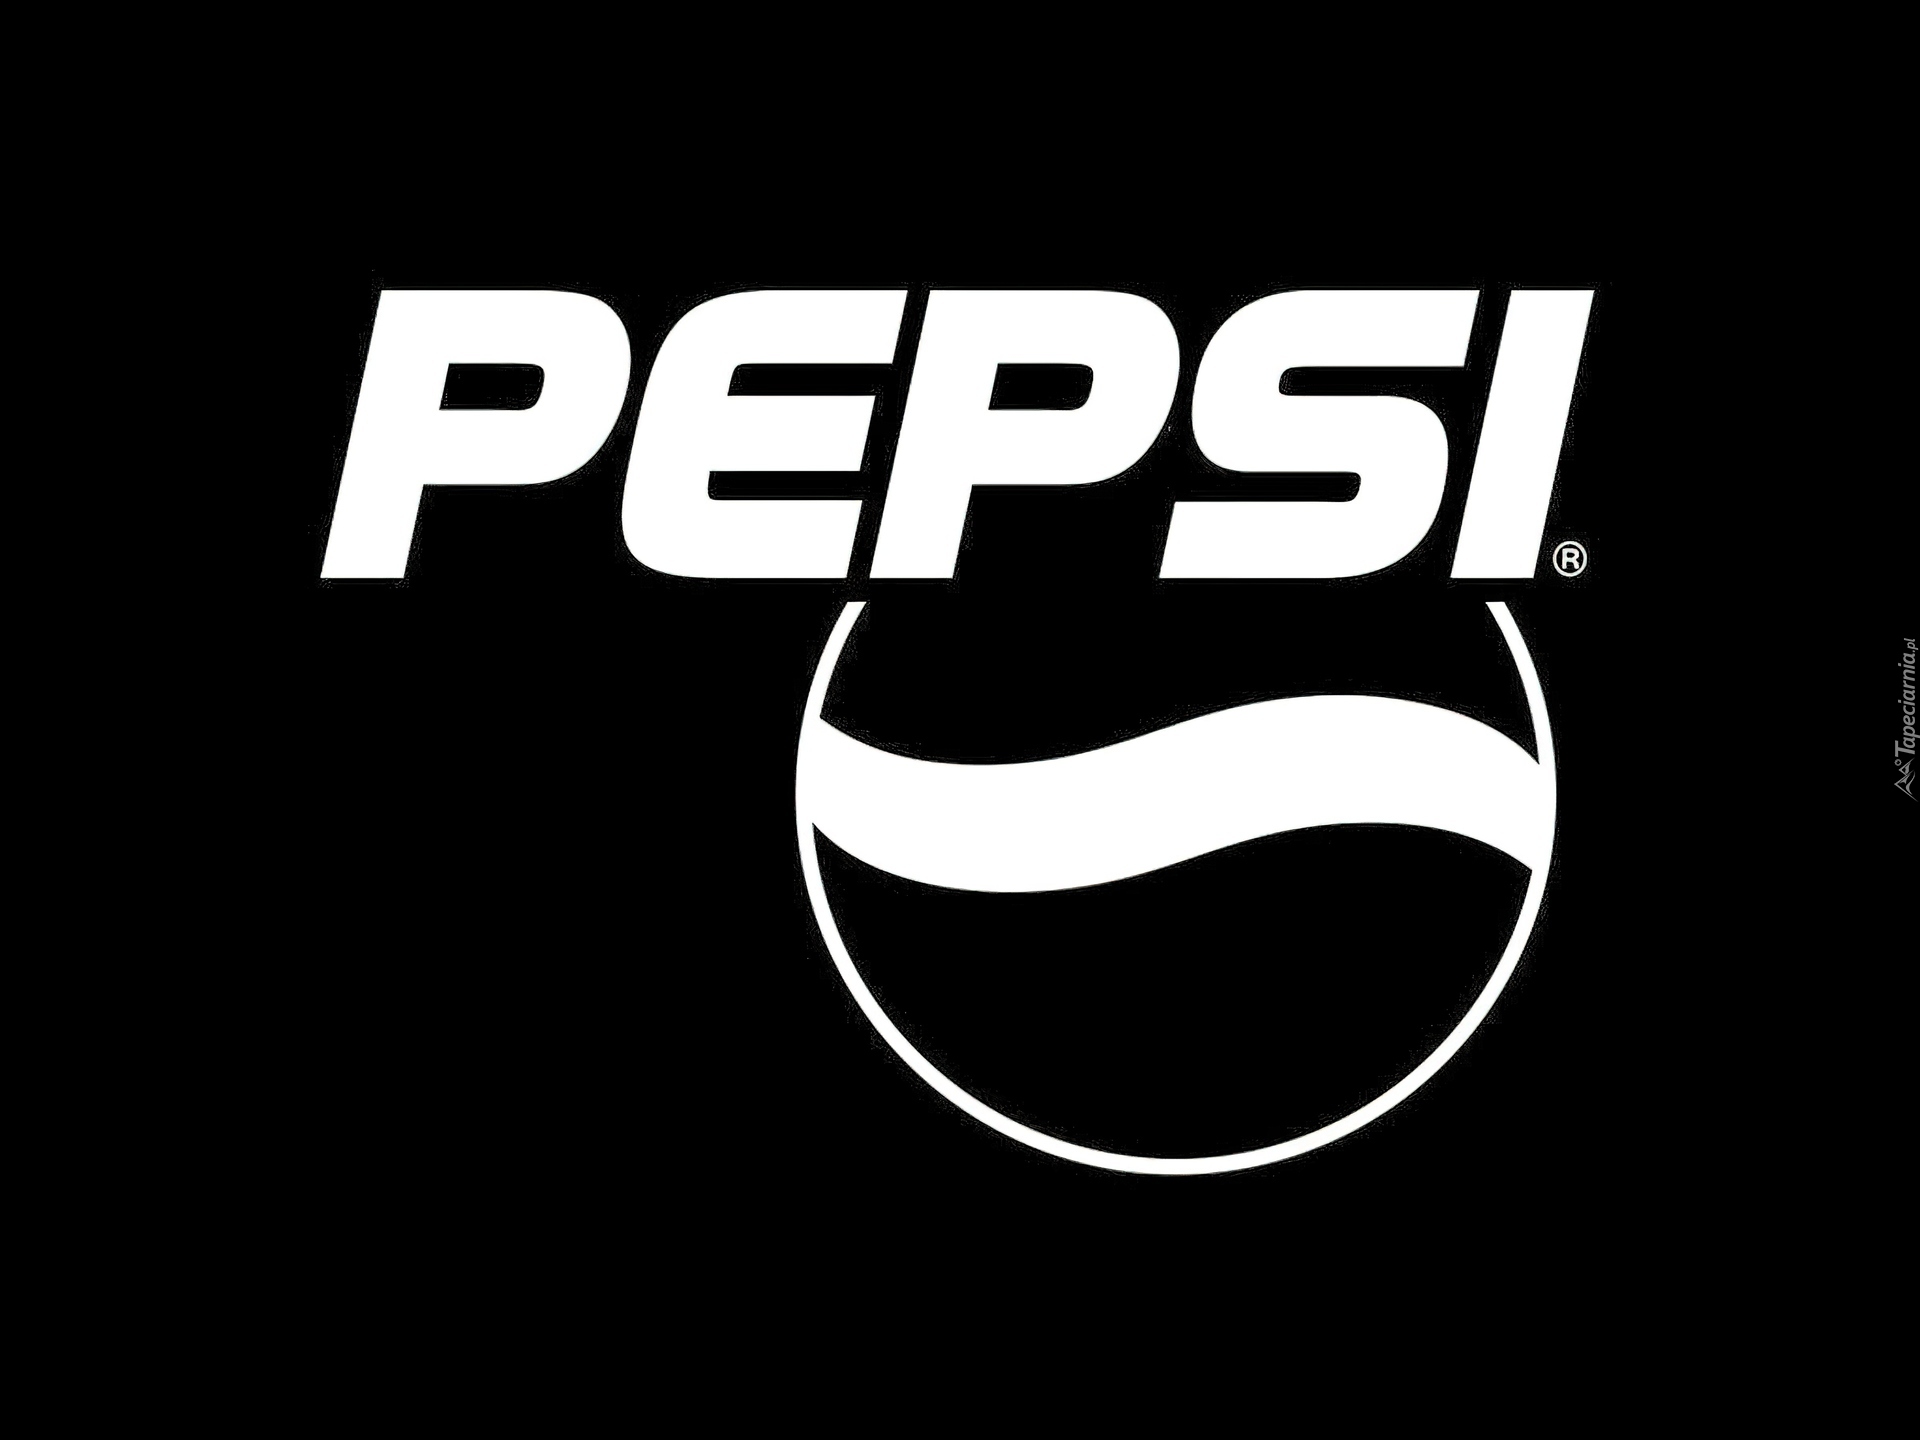 Logo, Pepsi, Czarne, Tło